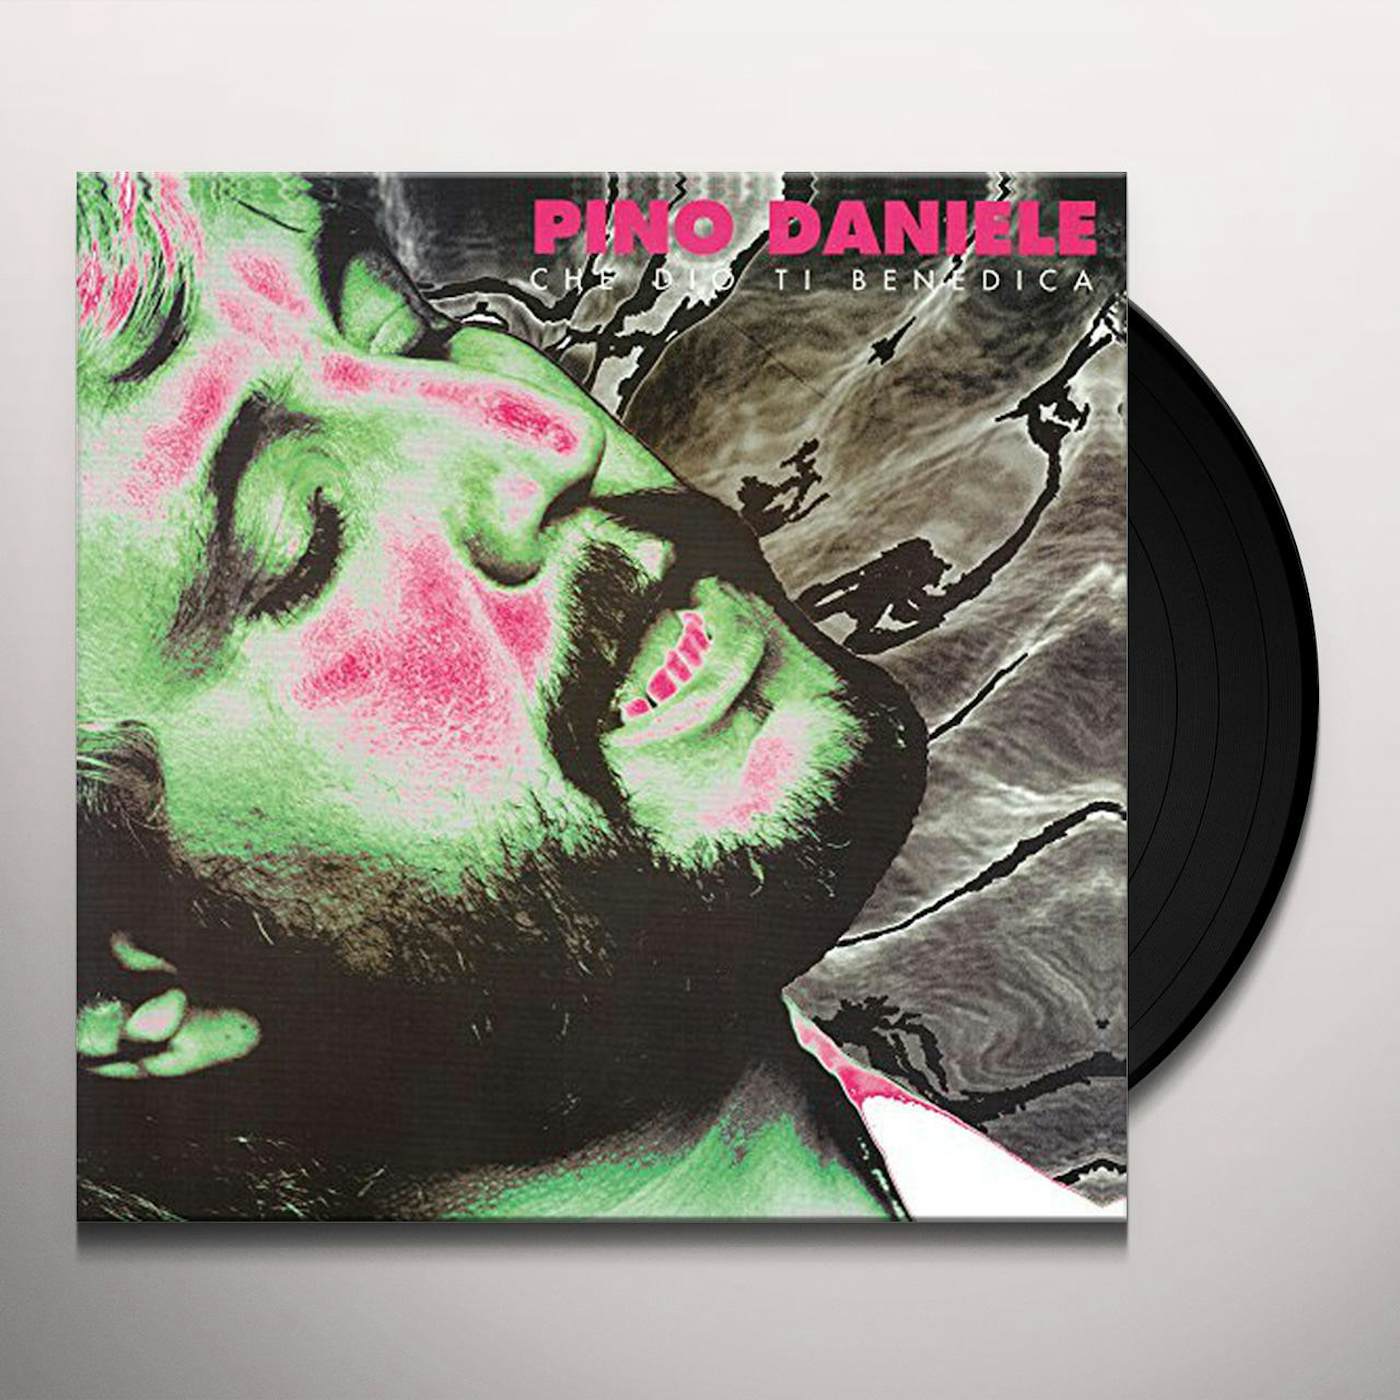 Pino Daniele Che Dio Ti Benedica Vinyl Record